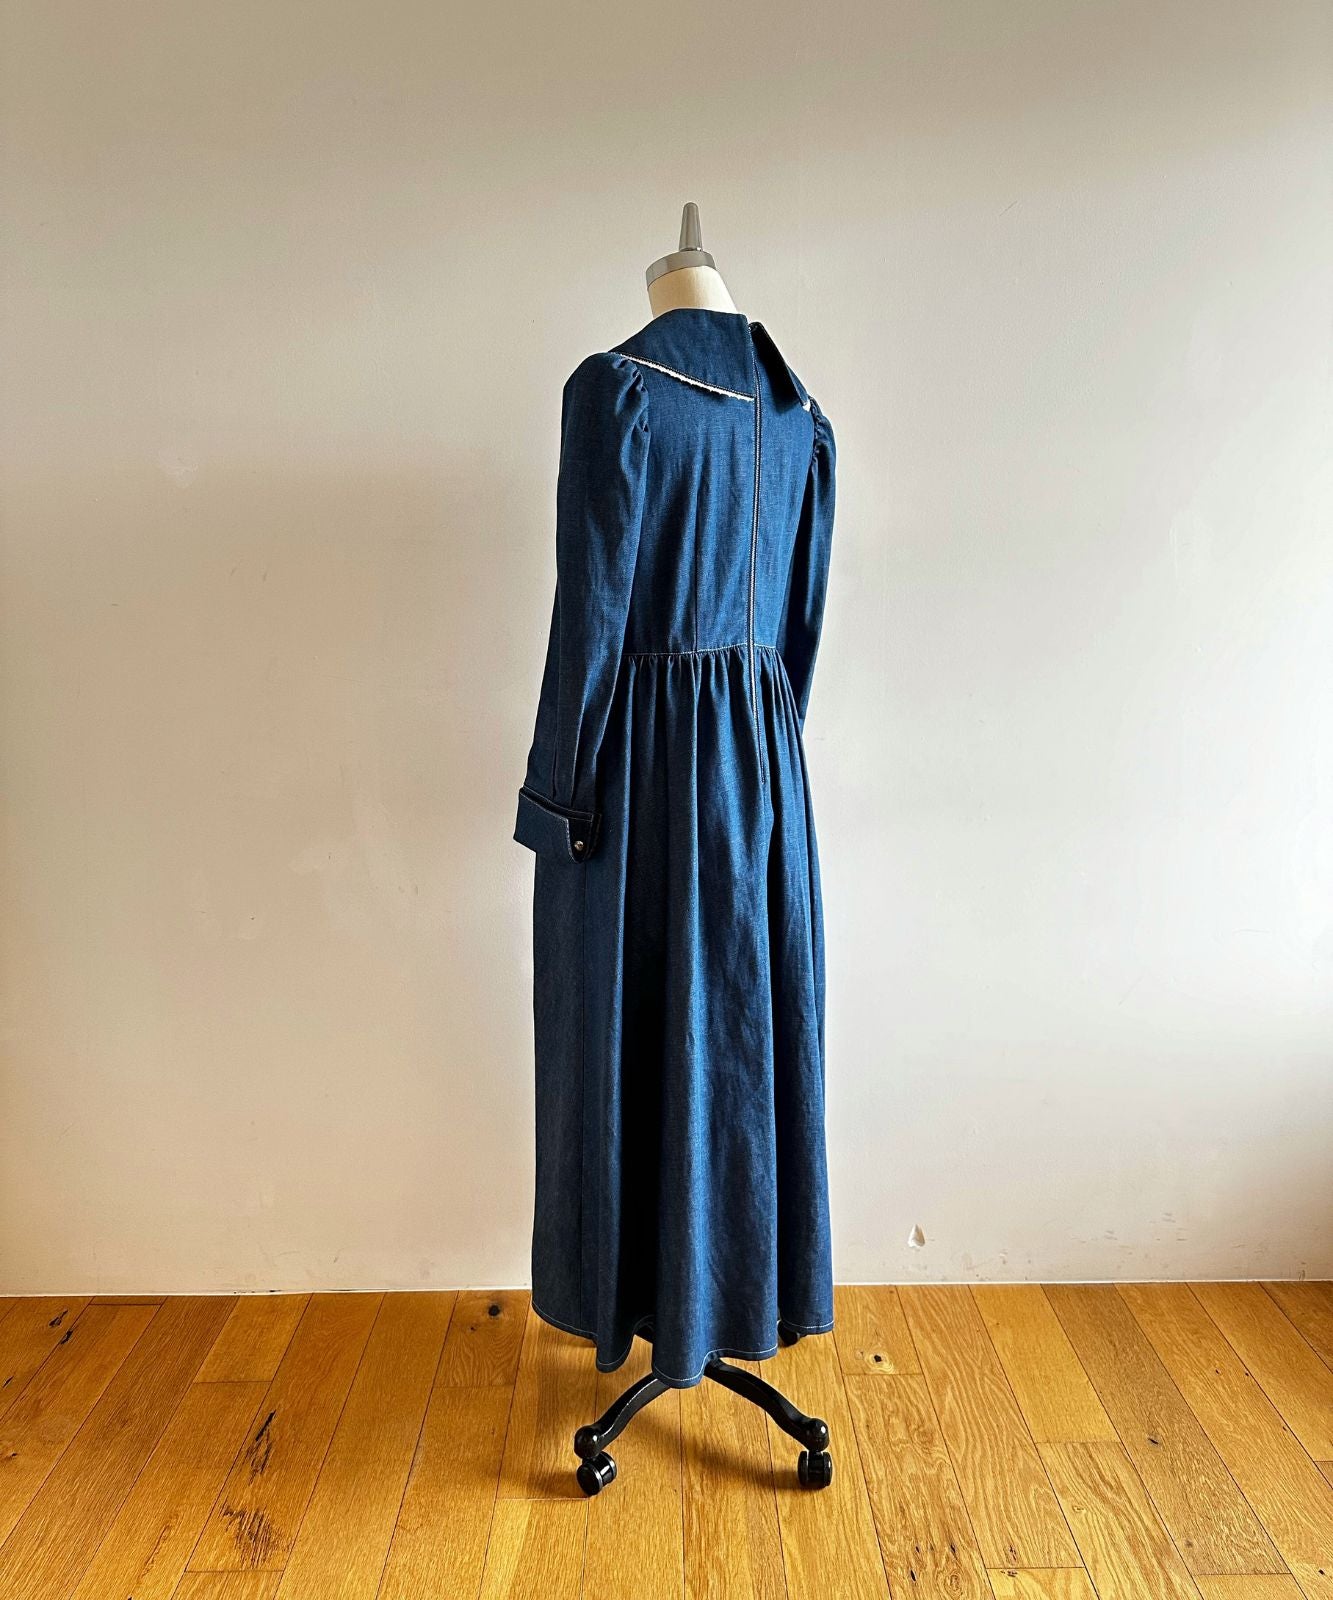 ≪在庫販売≫lace Pintuck Denim Classical dress(レースピンタックデニムクラシカルドレス) 在庫販売 / ブルー / Mサイズ